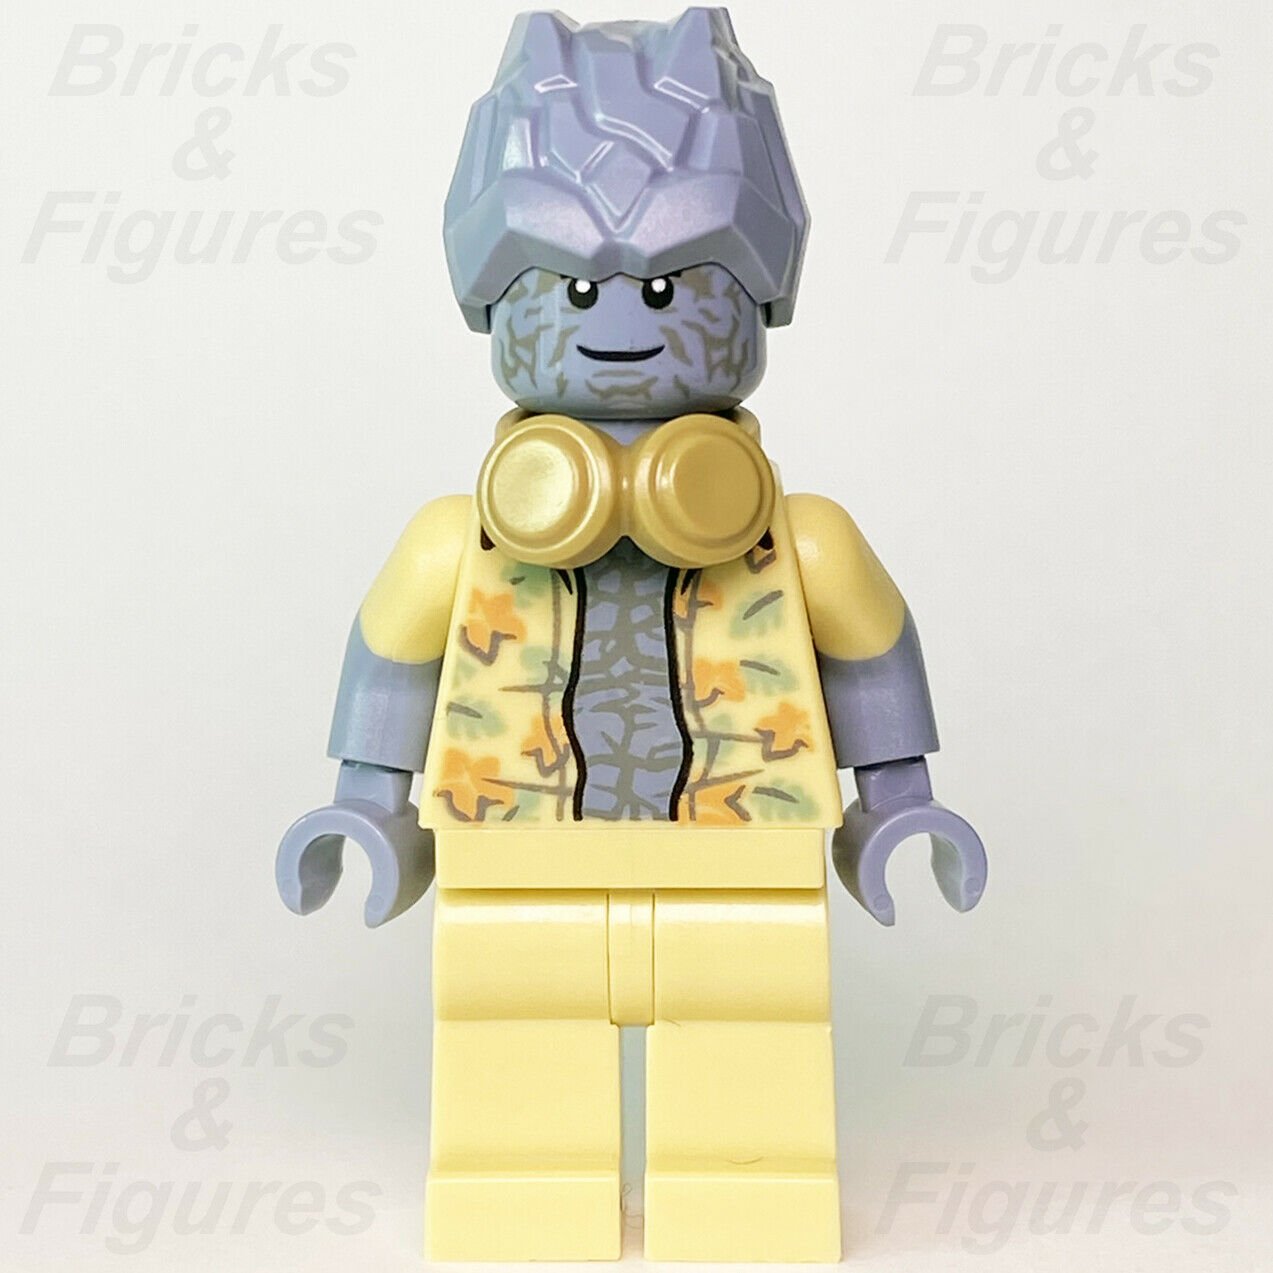 New Marvel Super Heroes LEGO Korg Avengers Endgame Minifigure 76200 sh752 - Bricks & Figures